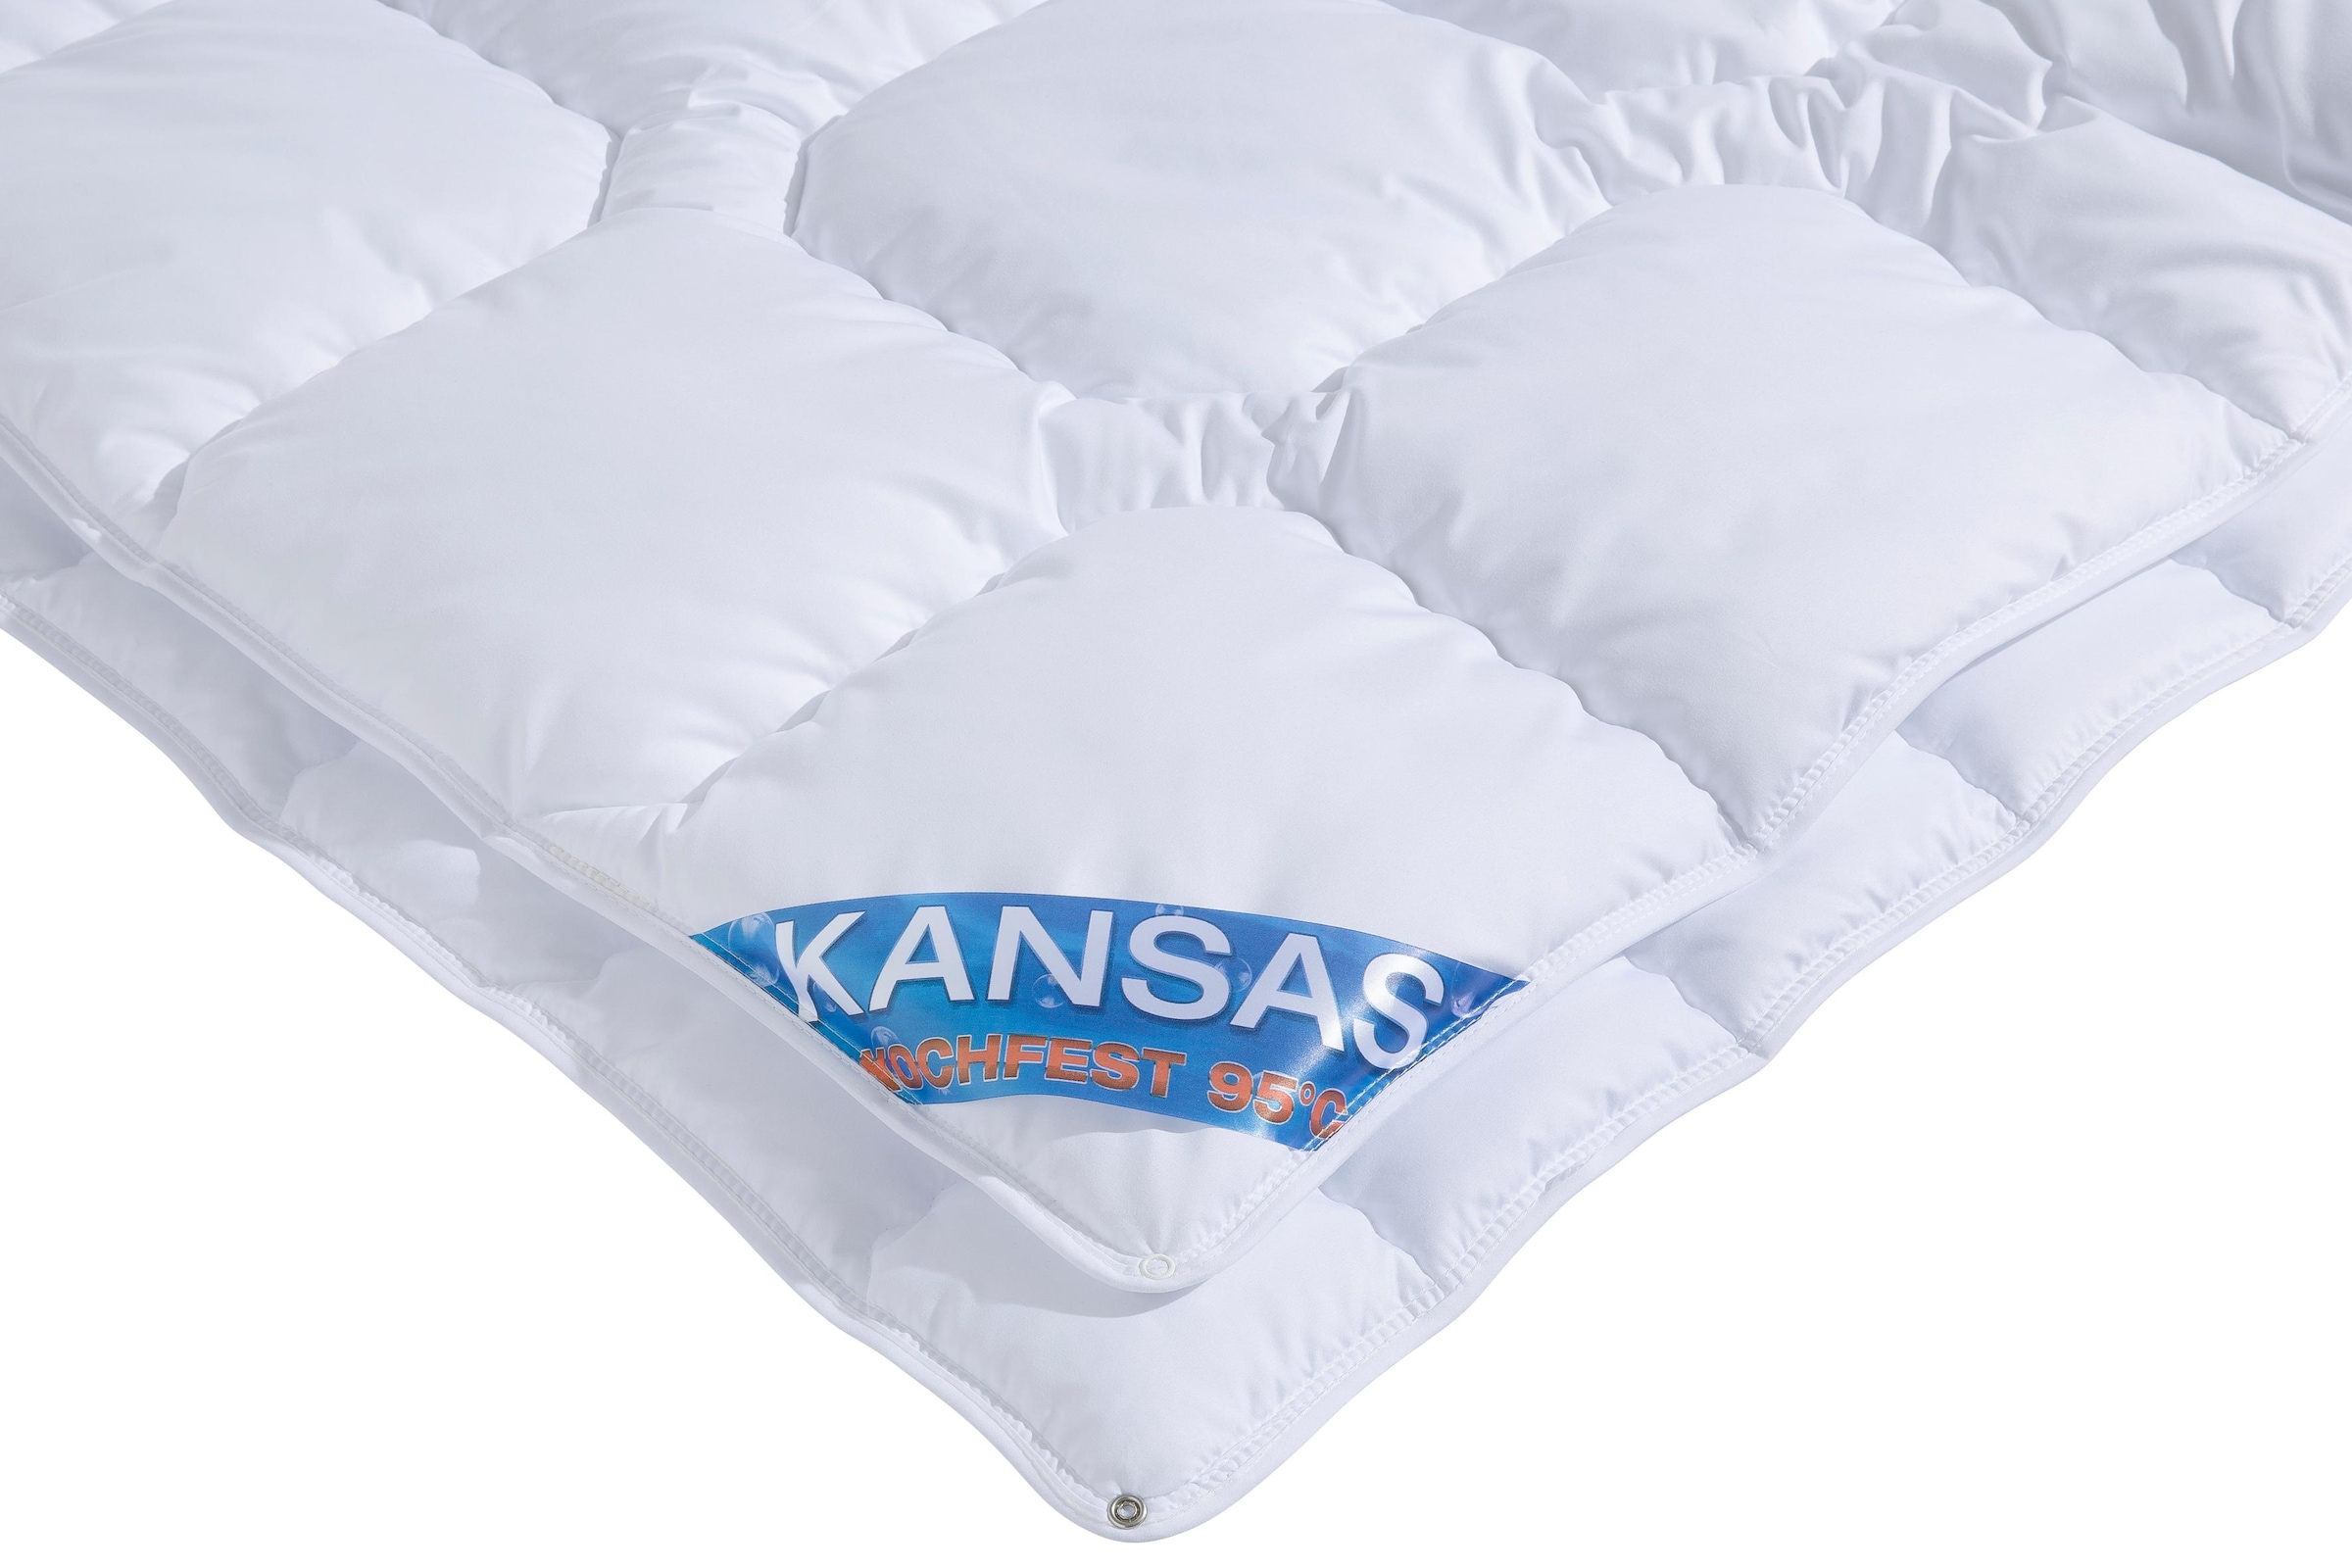 f.a.n. Schlafkomfort Microfaserbettdecke »Kansas«, 4-Jahreszeiten, Füllung Polyesterfaser, Bezug 100% Polyester, (1 St.), Bettdecke in 135x200 cm und weiteren Grössen, für Sommer oder Winter